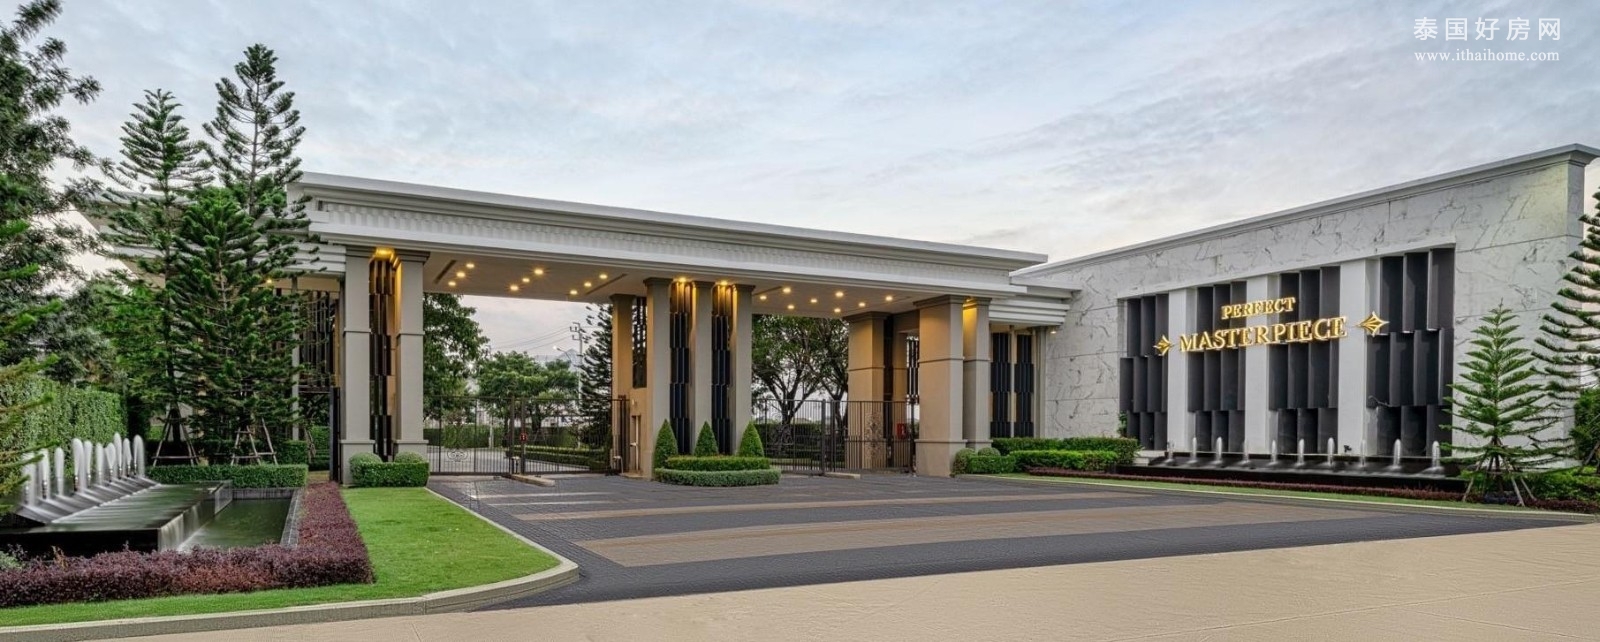 沙攀松区 | Perfect Masterpiece Rama 9-Krungthep Kreetha 独栋别墅出租/出售 4卧 650平米 出租850,000泰铢/月，出售1.05亿泰铢